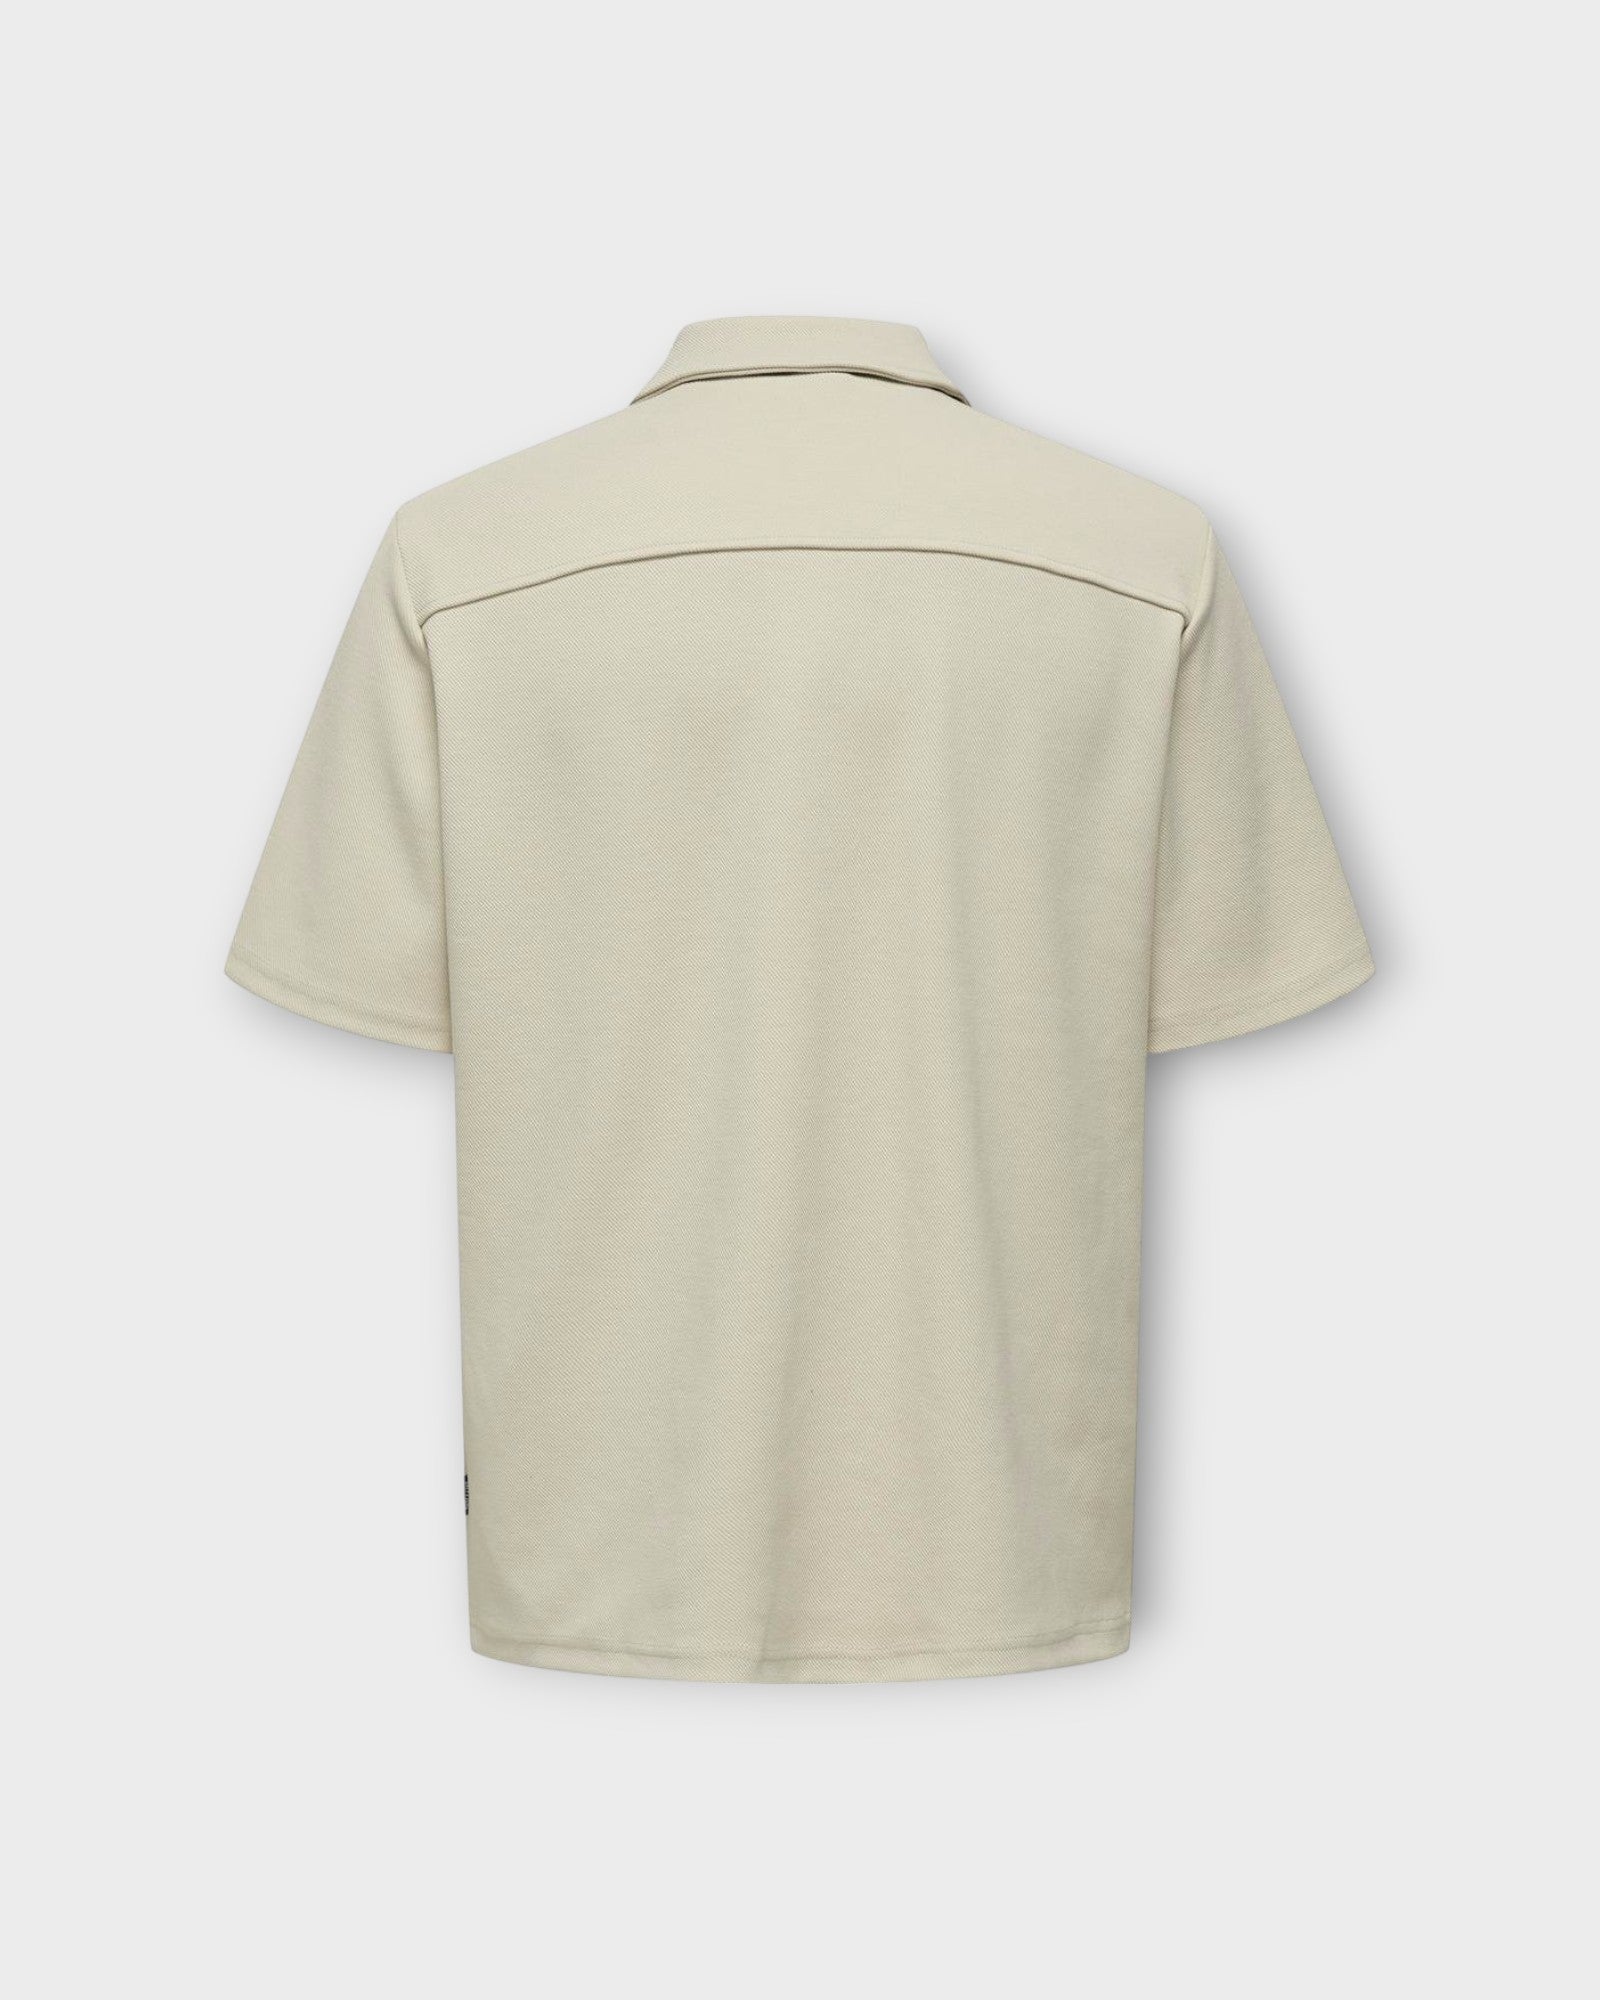  Kodyl SS Shirt Sweat Chinchilla fra Only and Sons. Lys Sandfarvet Kortærmet skjorte til mænd. Her set bagfra.